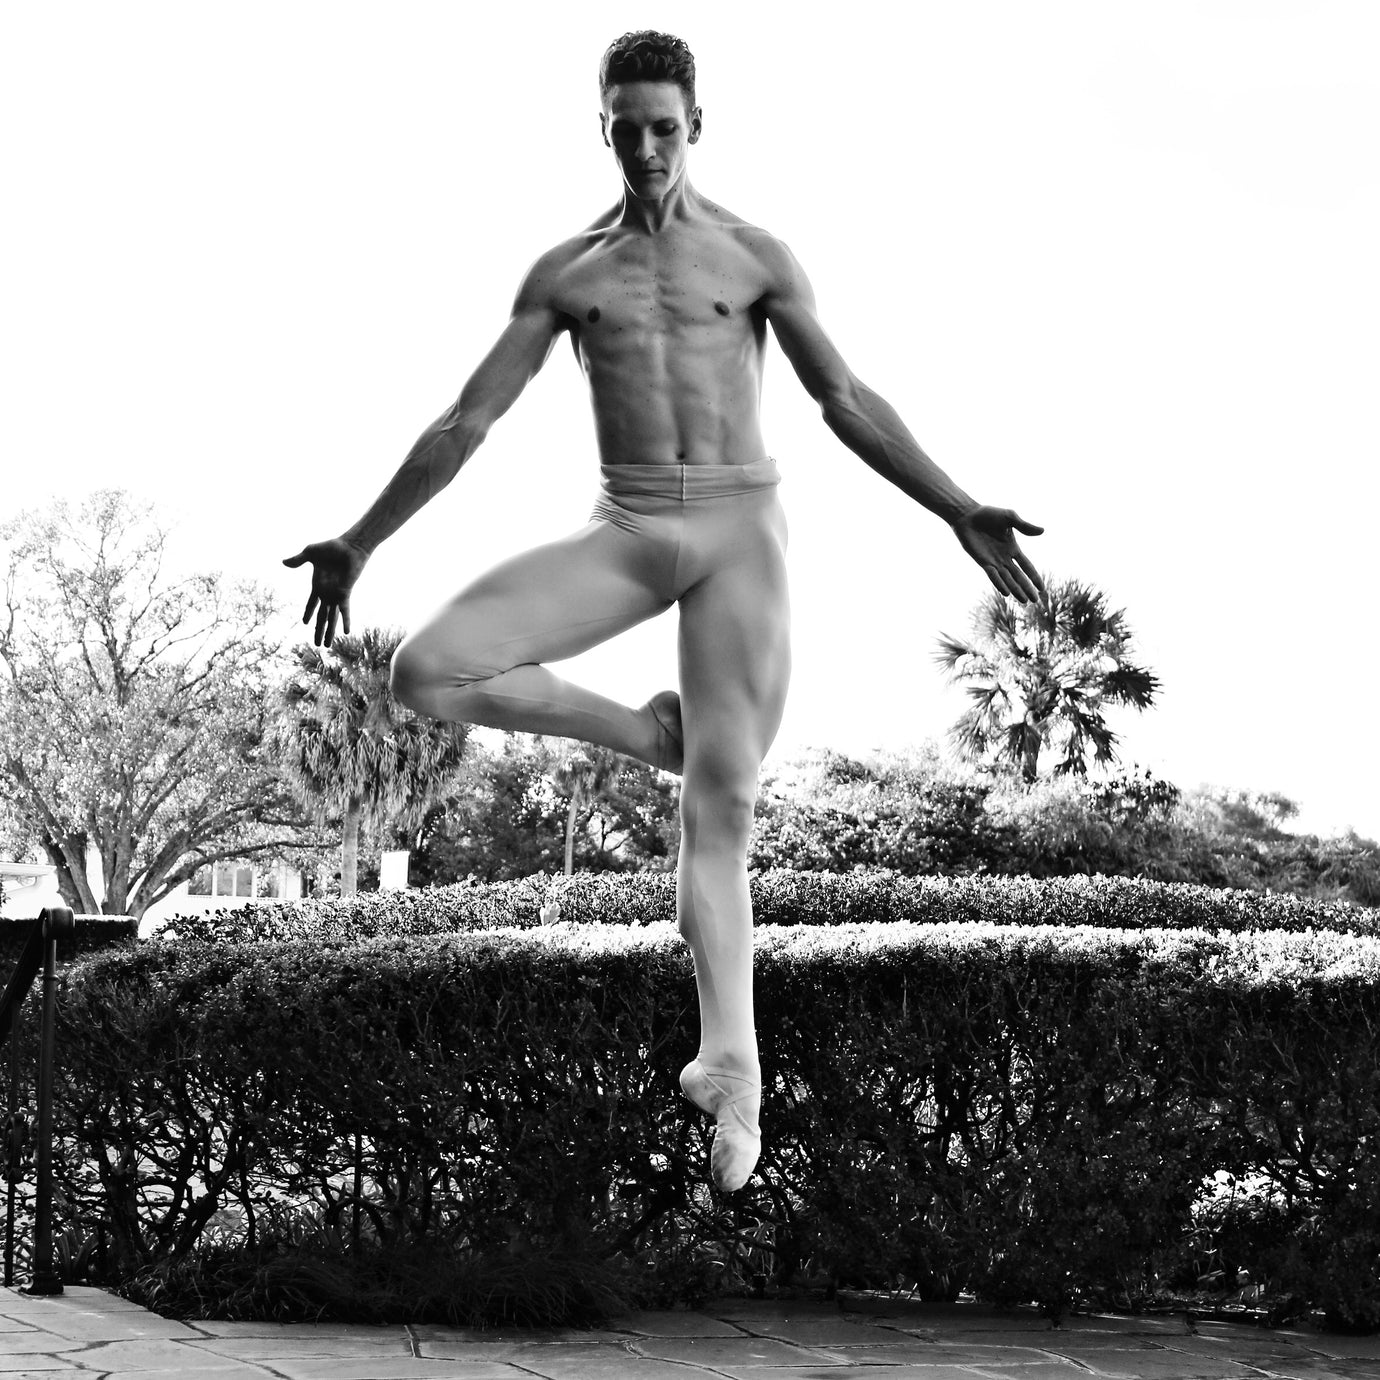 Adam Boreland - Gallery Ambassador for I Dance Contemporary